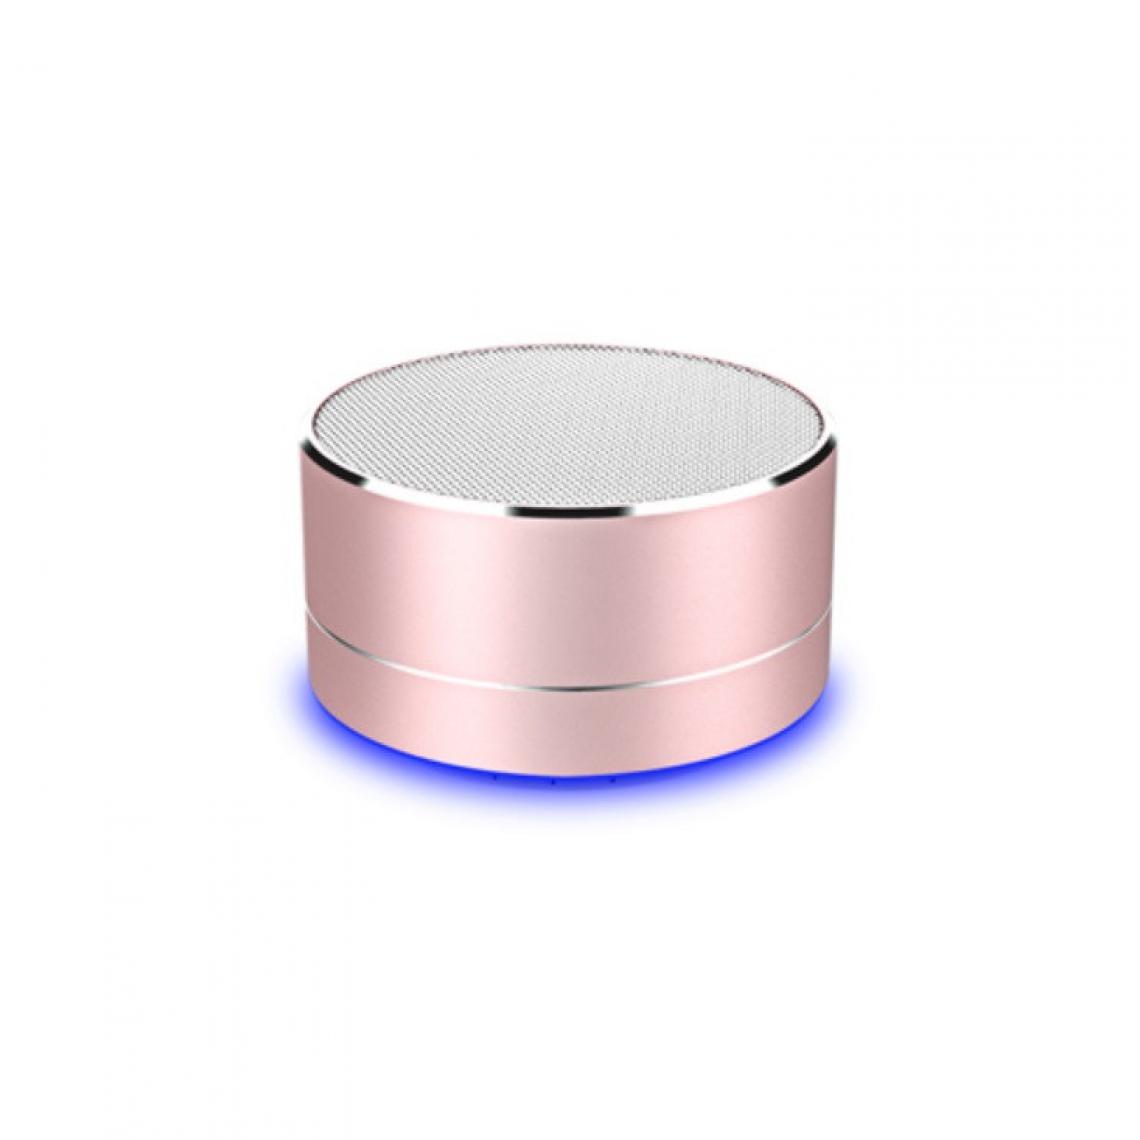 Shot - Enceinte Metal Bluetooth pour NOKIA 1.3 Smartphone Port USB Carte TF Auxiliaire Haut-Parleur Micro Mini (ROSE) - Autres accessoires smartphone